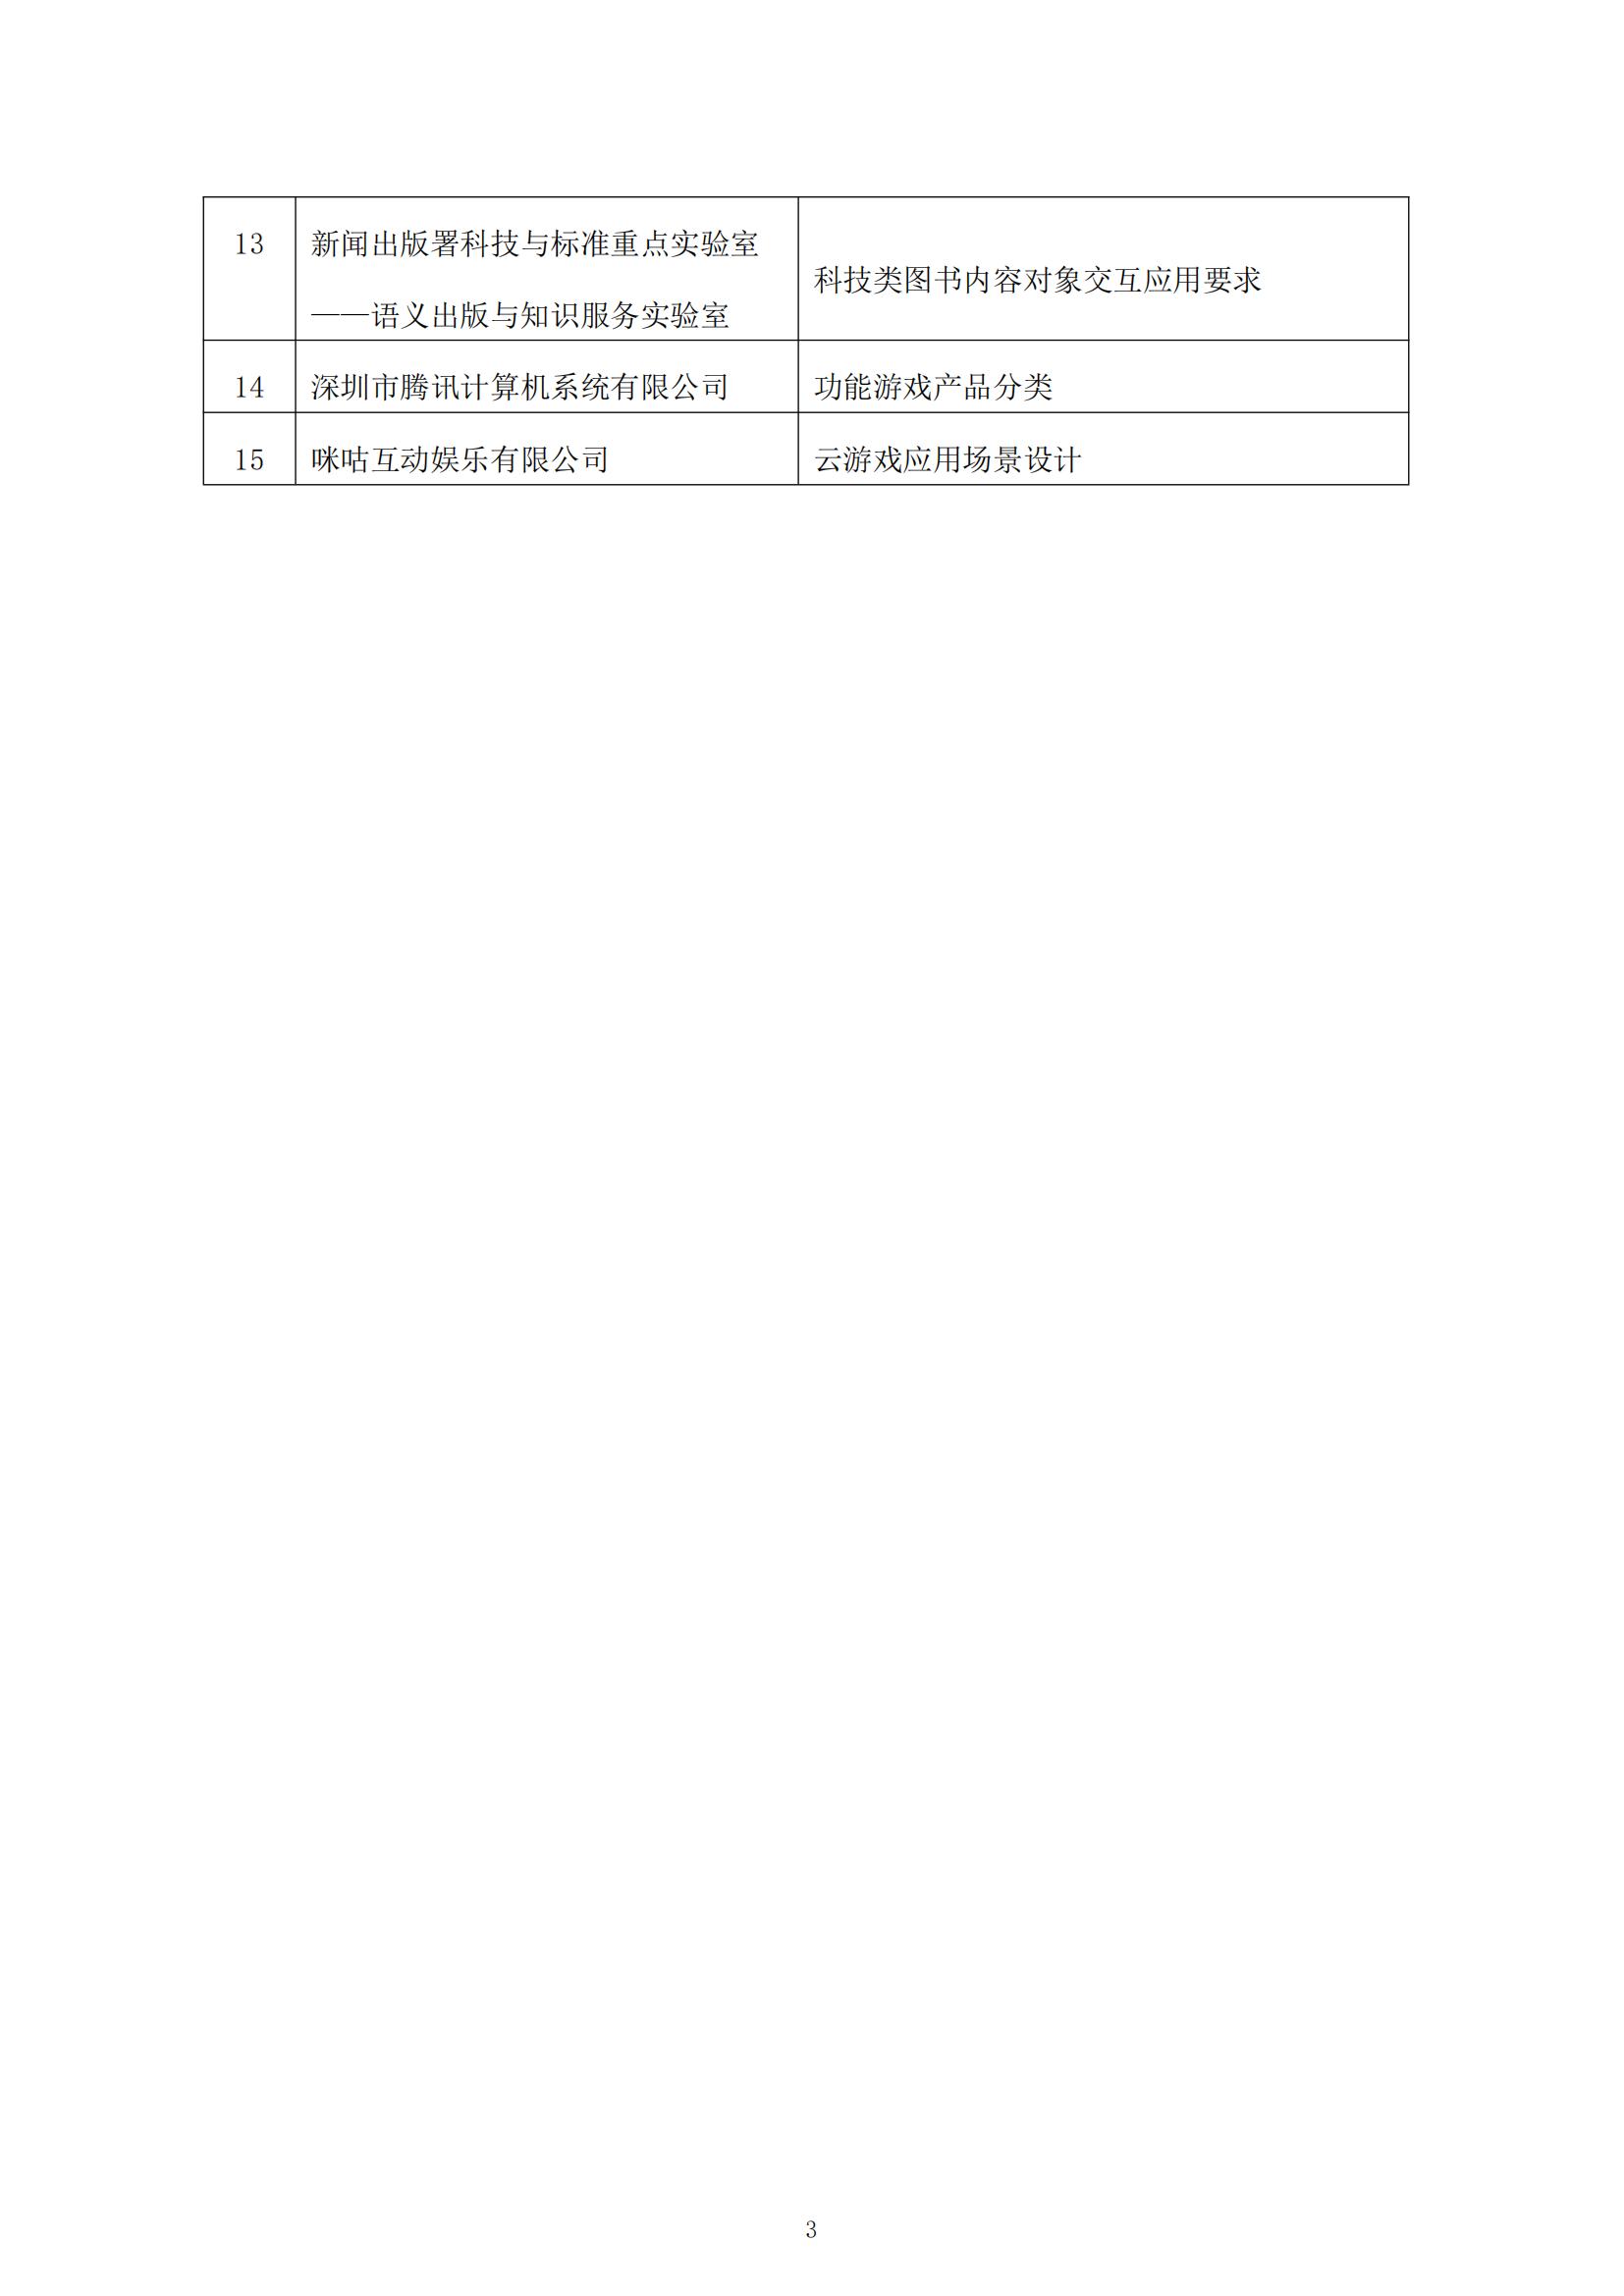 關于2022年度中國音像與數字出版協會團體標準立項的通知_02.jpg